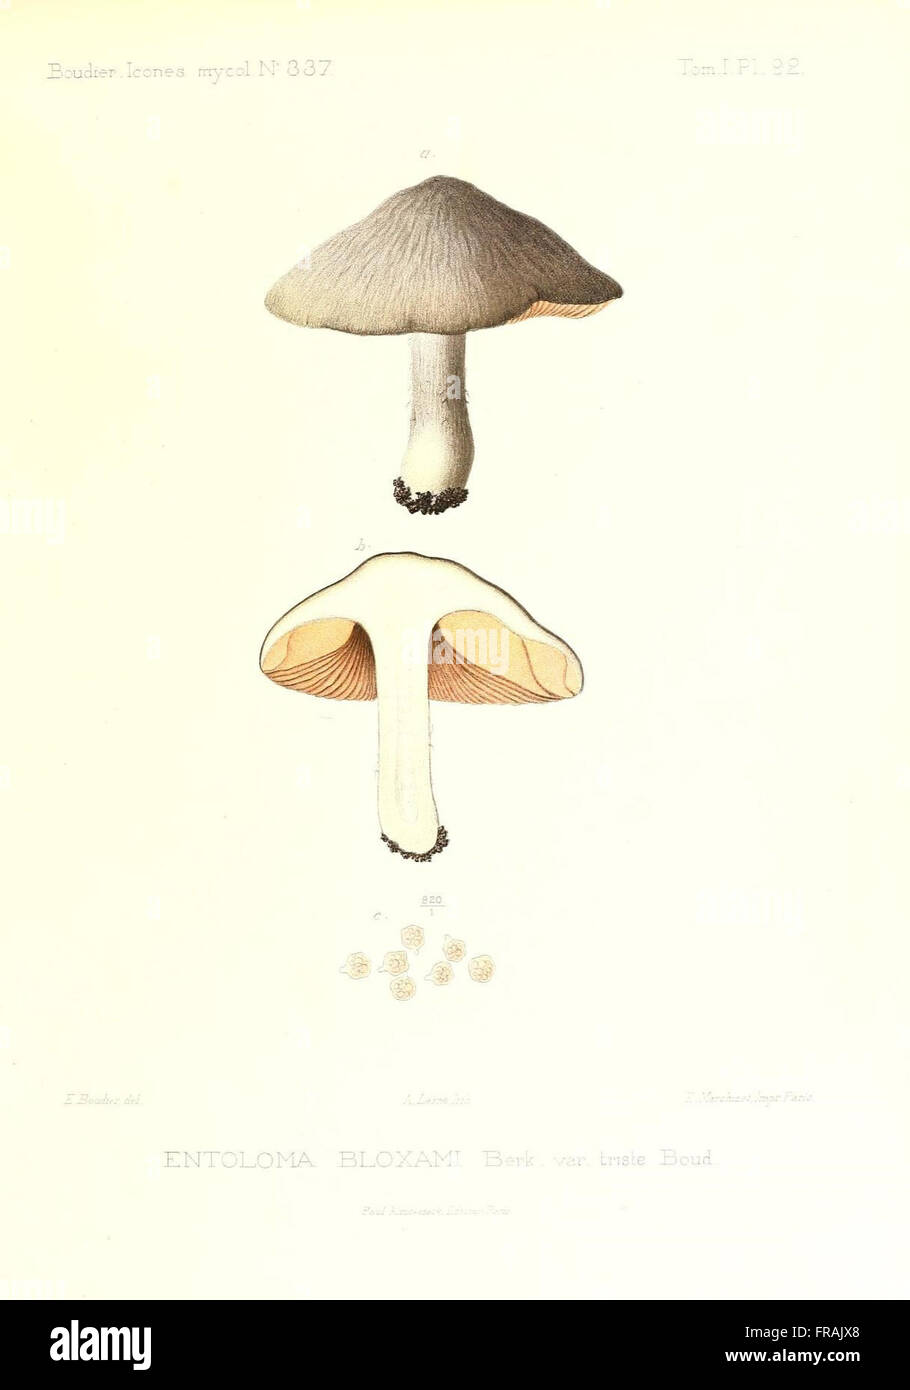 Icones mycologicC3A6, ou Iconographie des champignons de France principalement Discomycetes (Pl. 92) Stock Photo